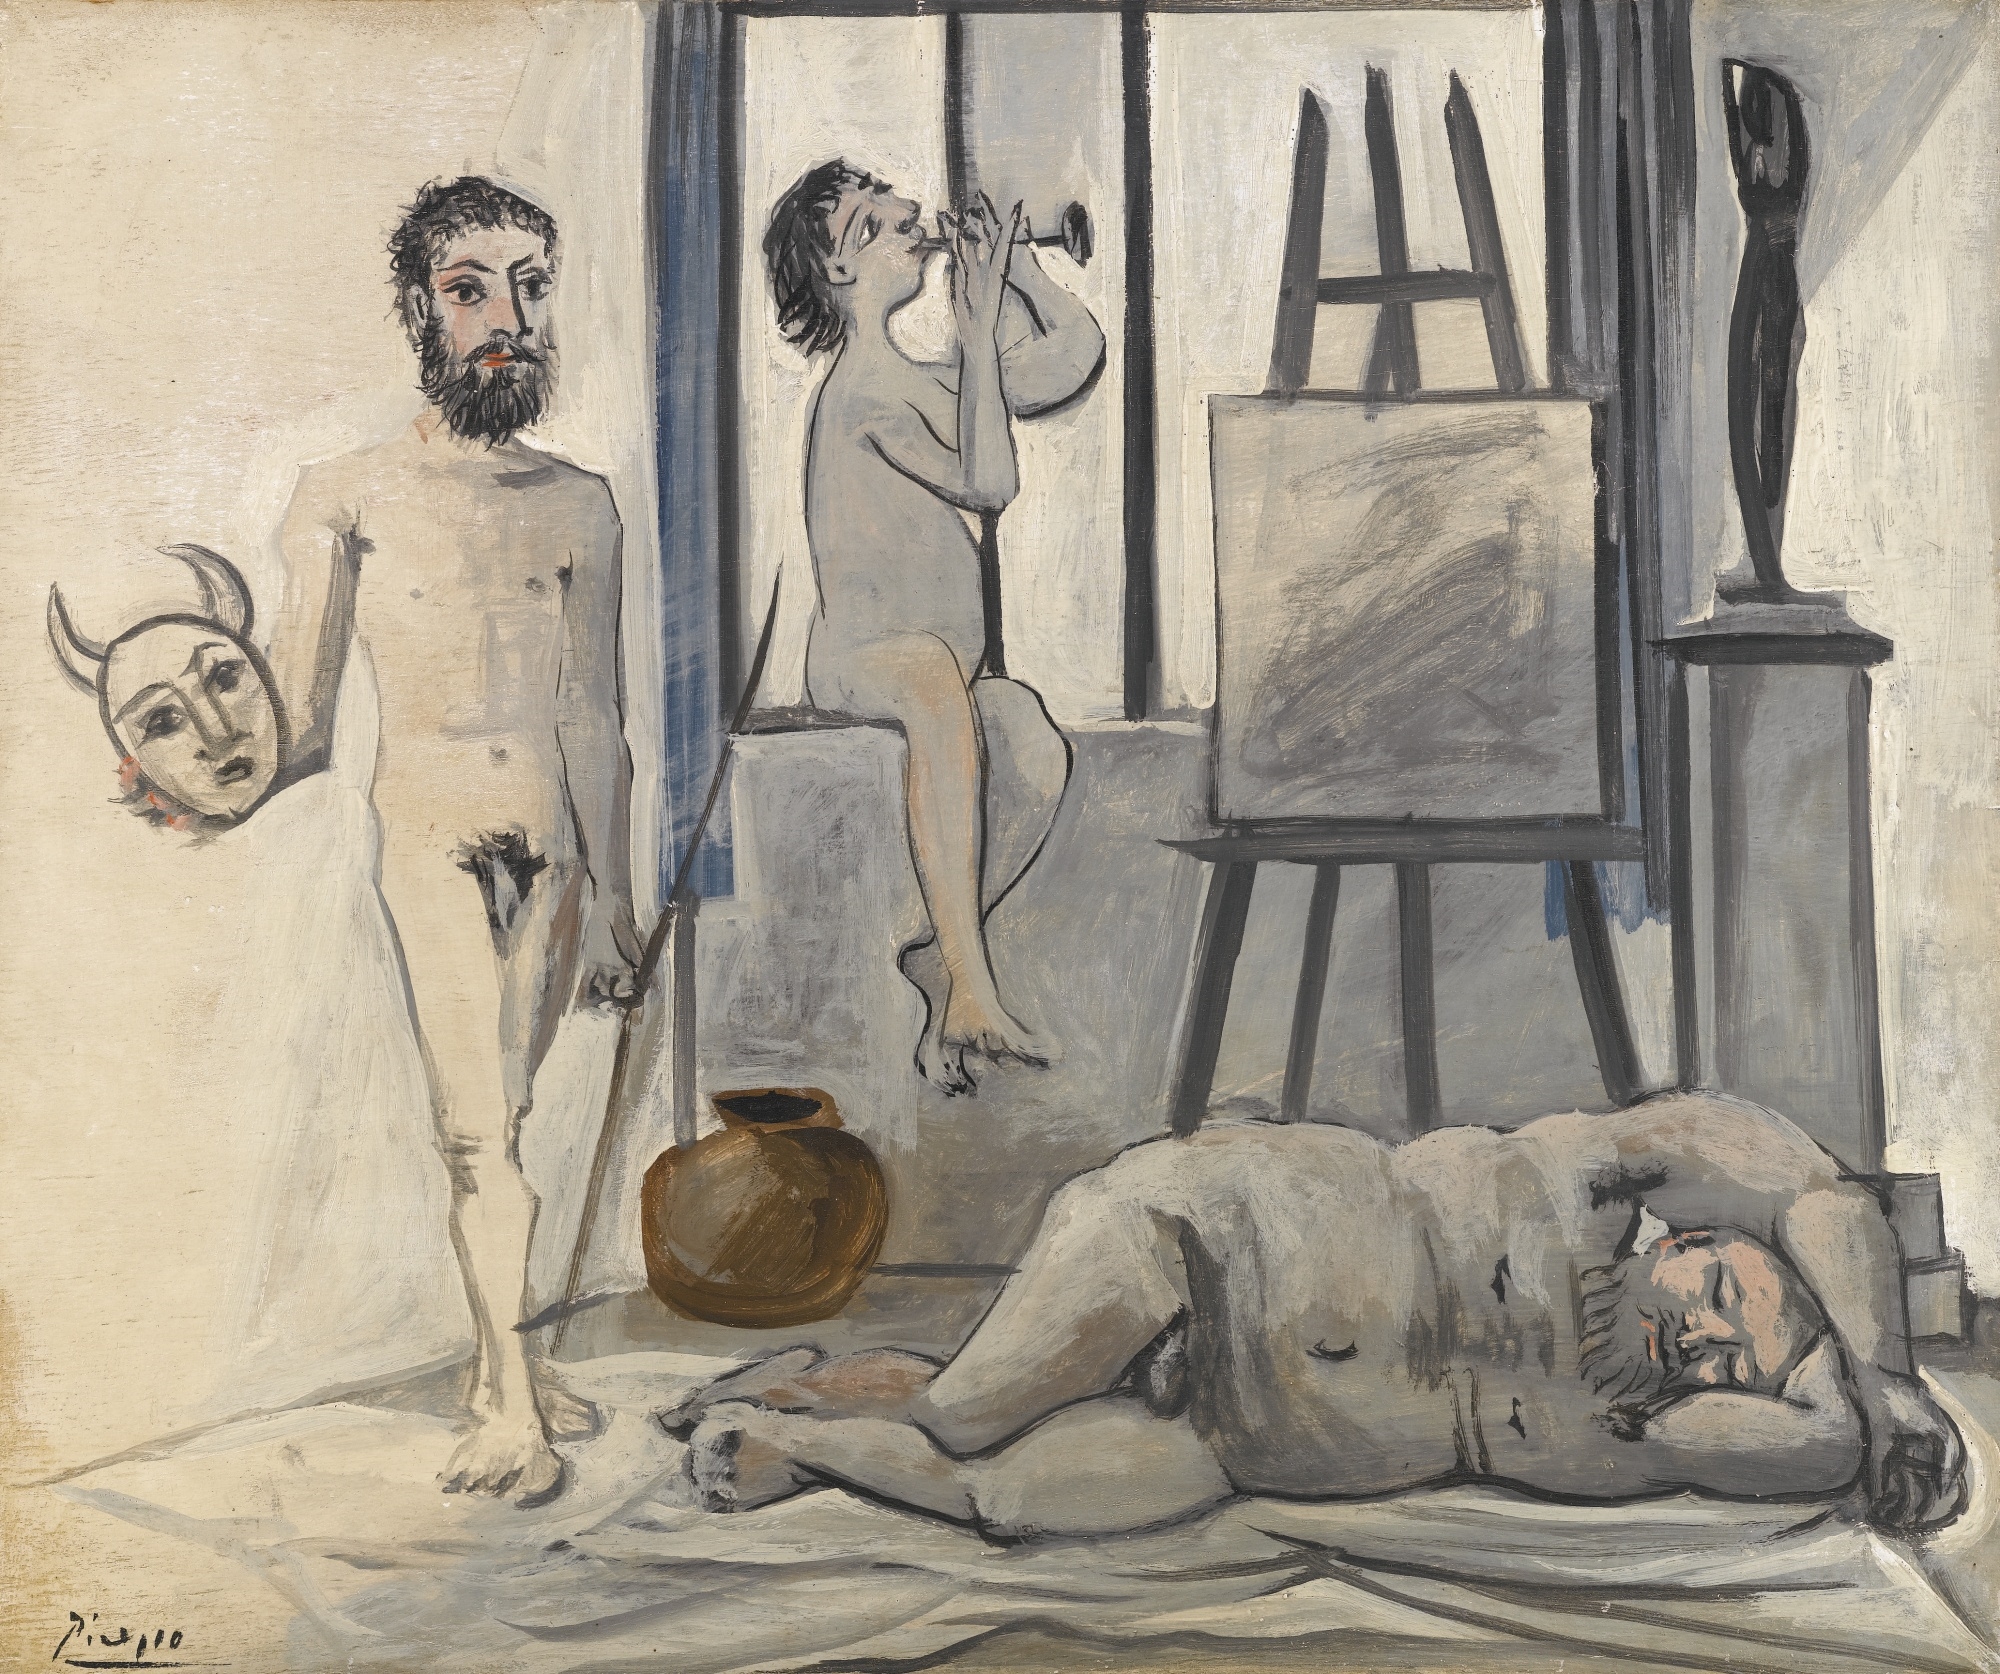 NUS MASCULINS (LES TROIS ÂGES DE L'HOMME) by Pablo Picasso, 1942